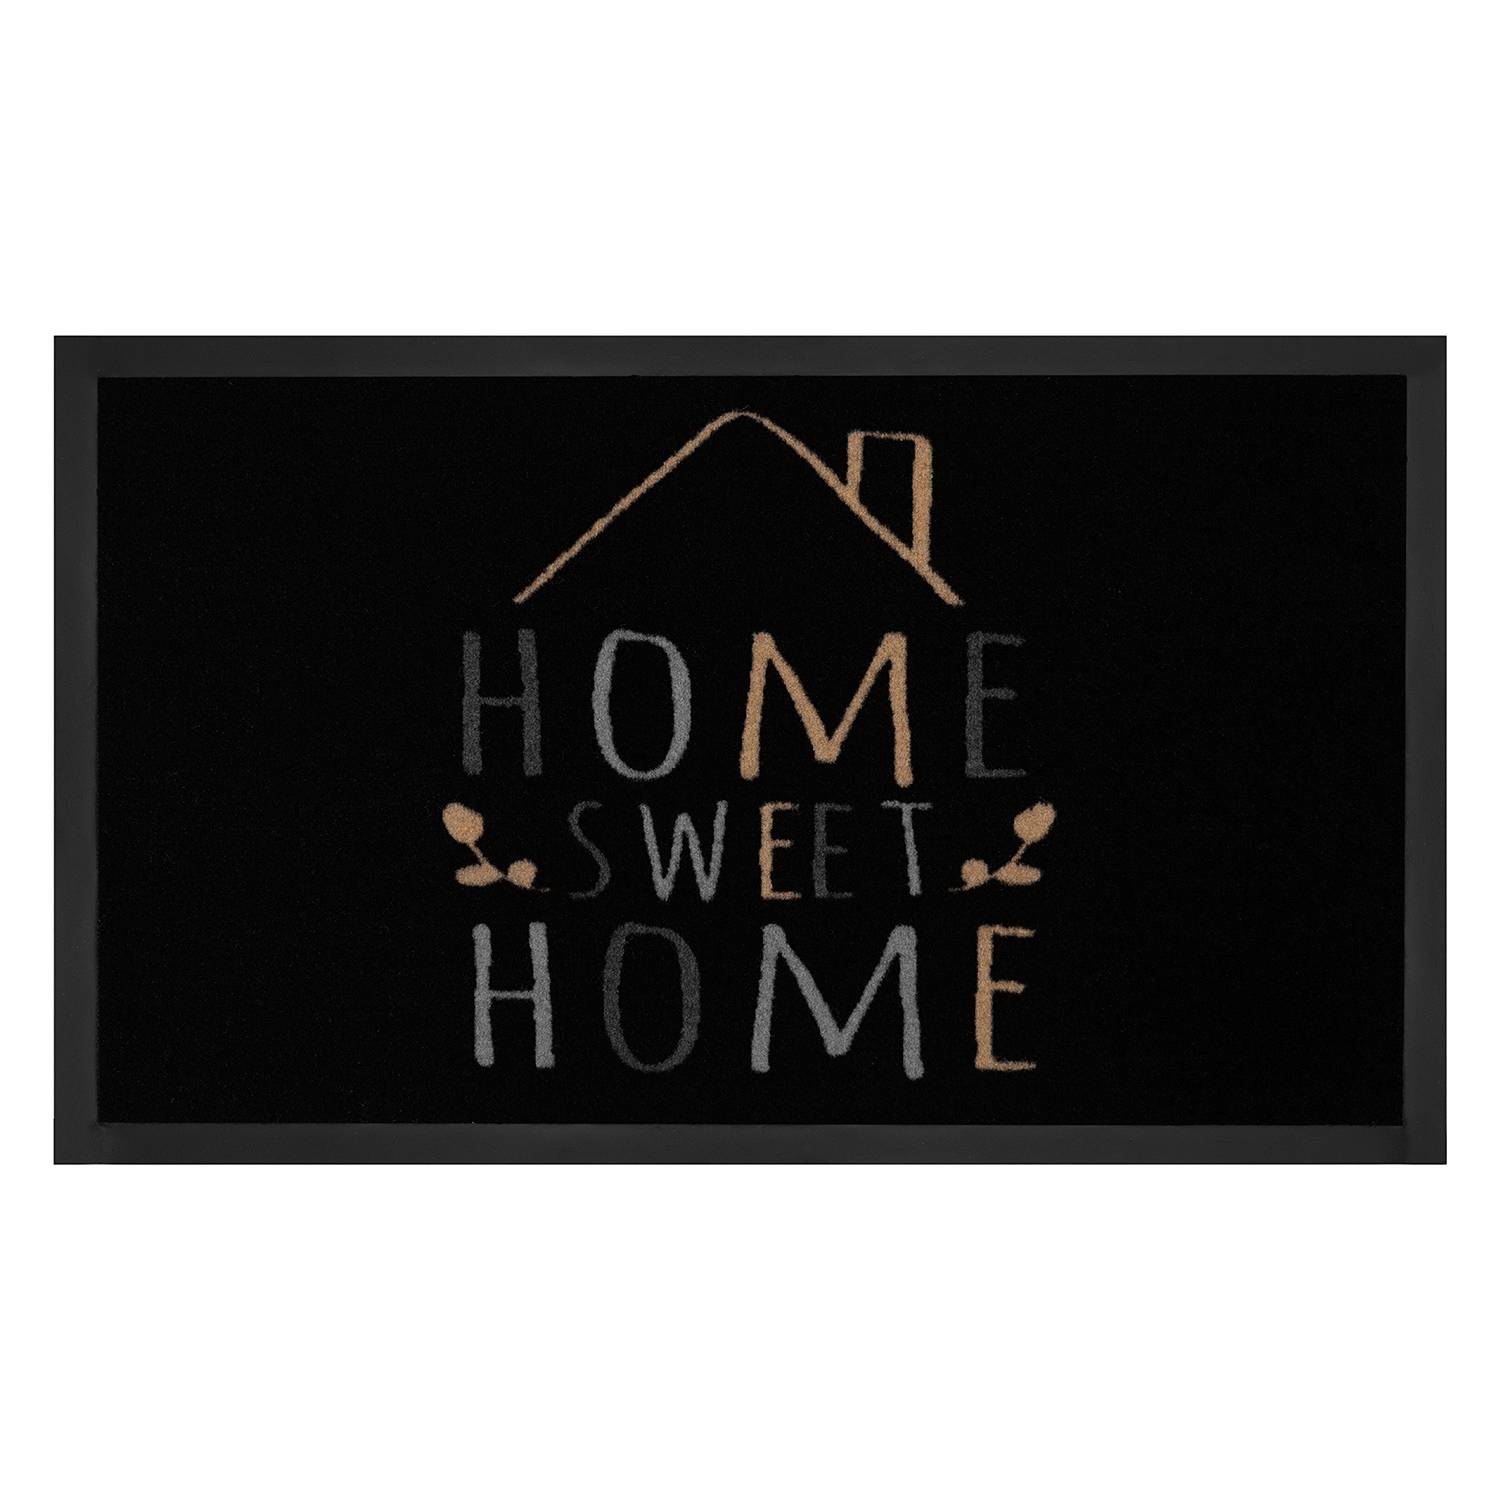 Fußmatte Home Sweet Home kaufen | home24